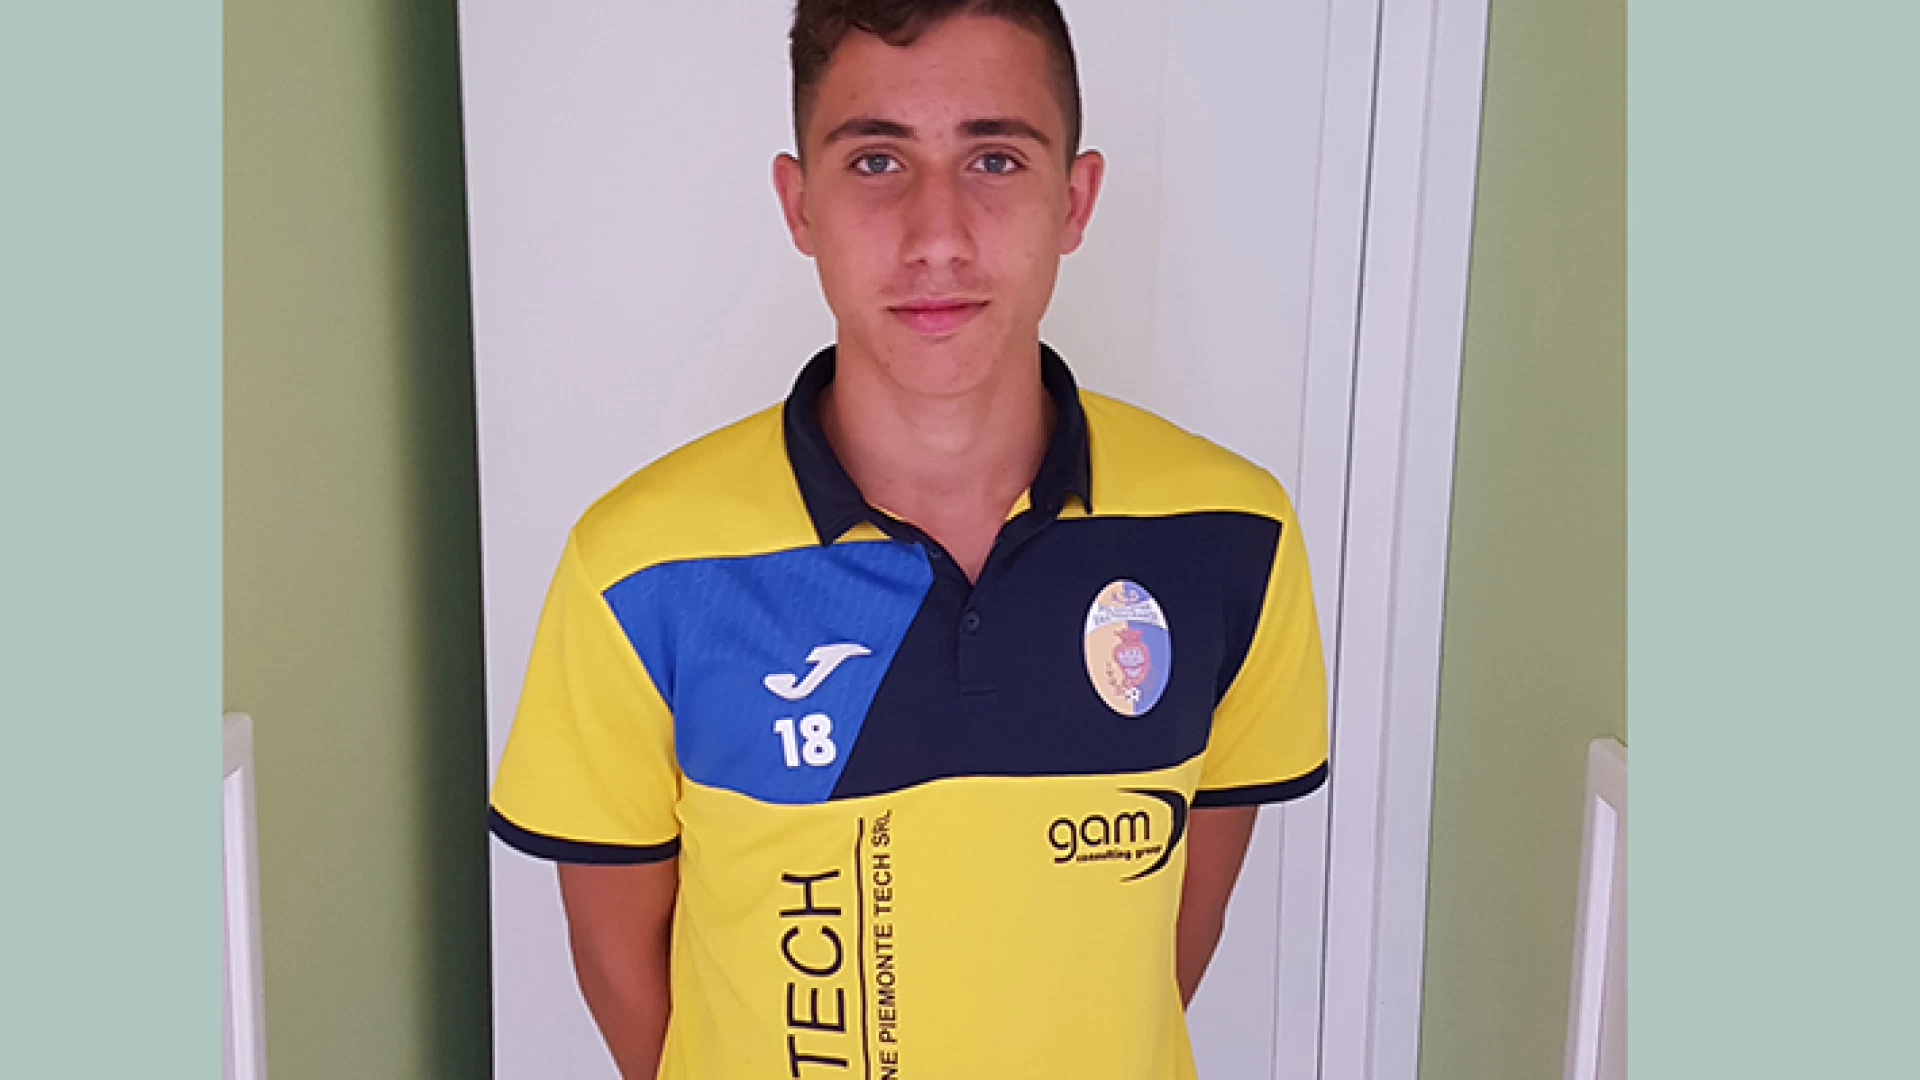 Calcio giovanile: rappresentativa nazionale Under18, convocato Tomassi del Vastogirardi. Premiato il lavoro della società altomolisana